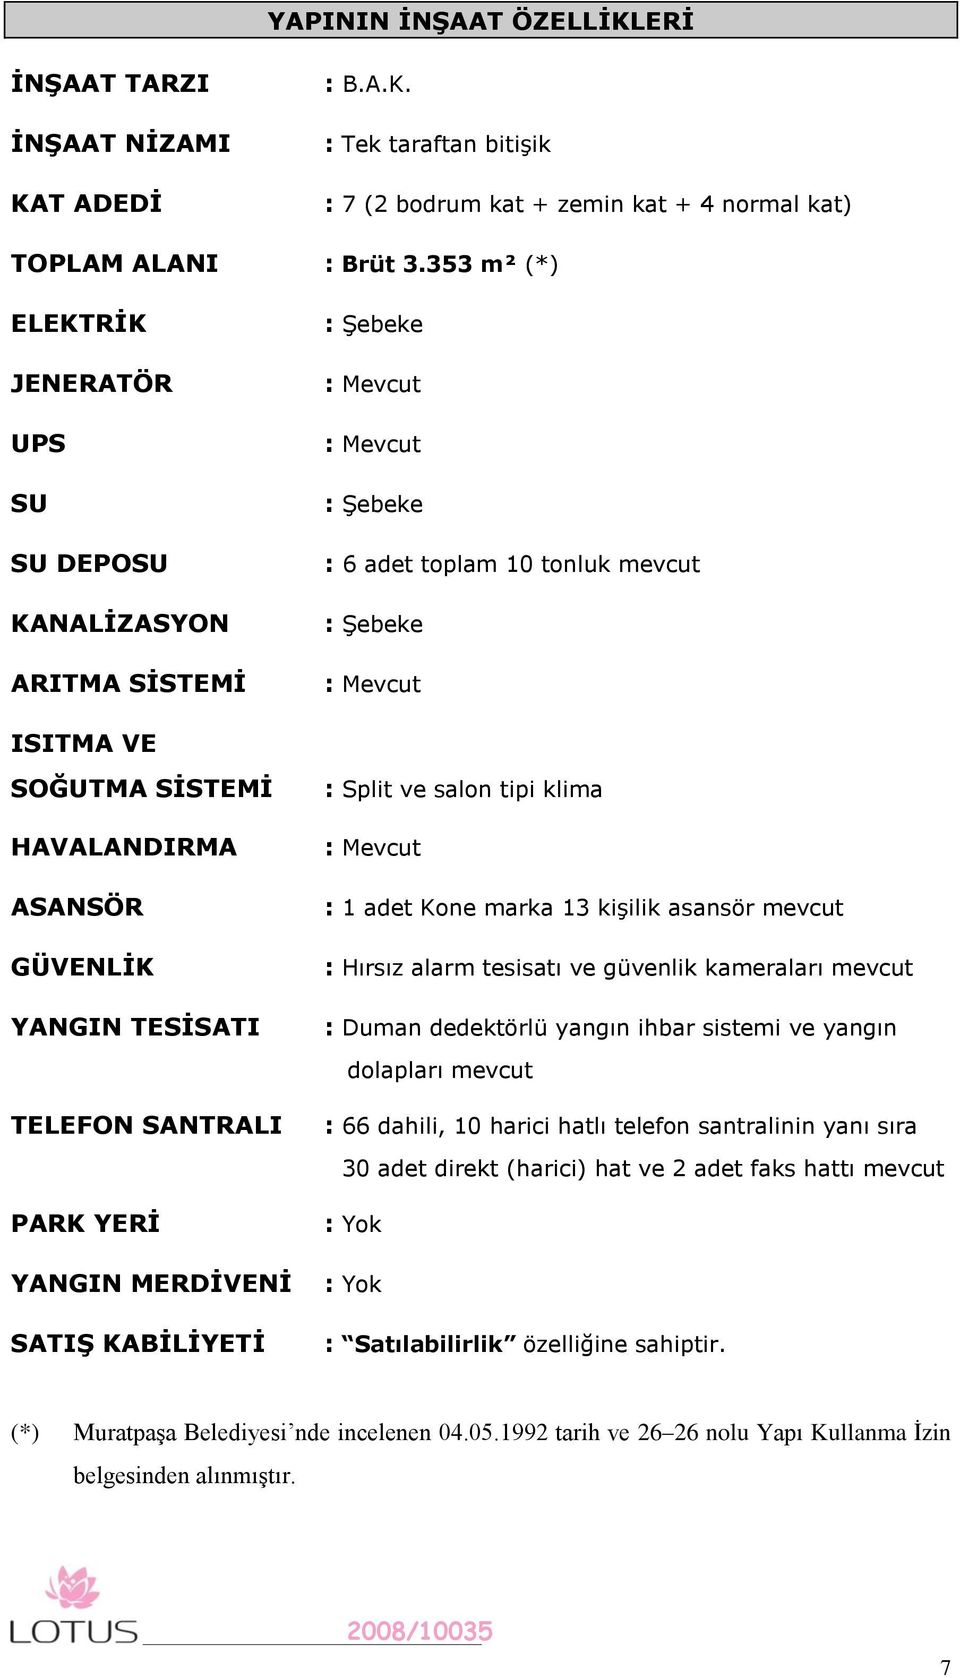 HAVALANDIRMA ASANSÖR GÜVENLĠK YANGIN TESĠSATI TELEFON SANTRALI PARK YERĠ YANGIN MERDĠVENĠ SATIġ KABĠLĠYETĠ : Split ve salon tipi klima : Mevcut : 1 adet Kone marka 13 kişilik asansör mevcut : Hırsız